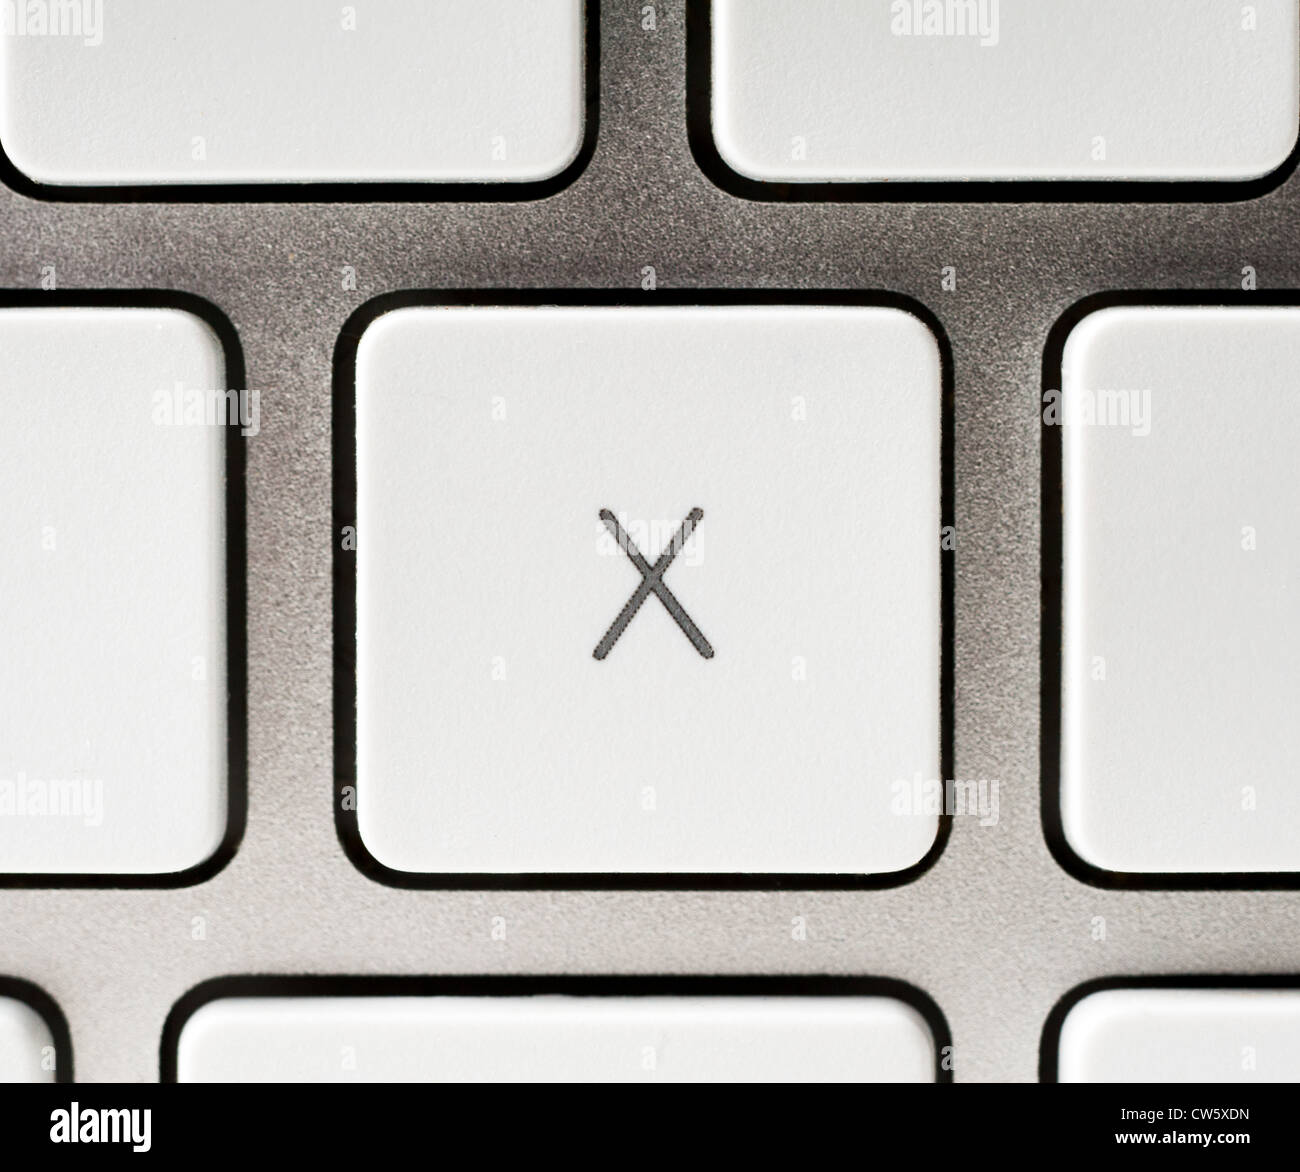 Buchstabe X auf einer Apple-Tastatur Stockfoto